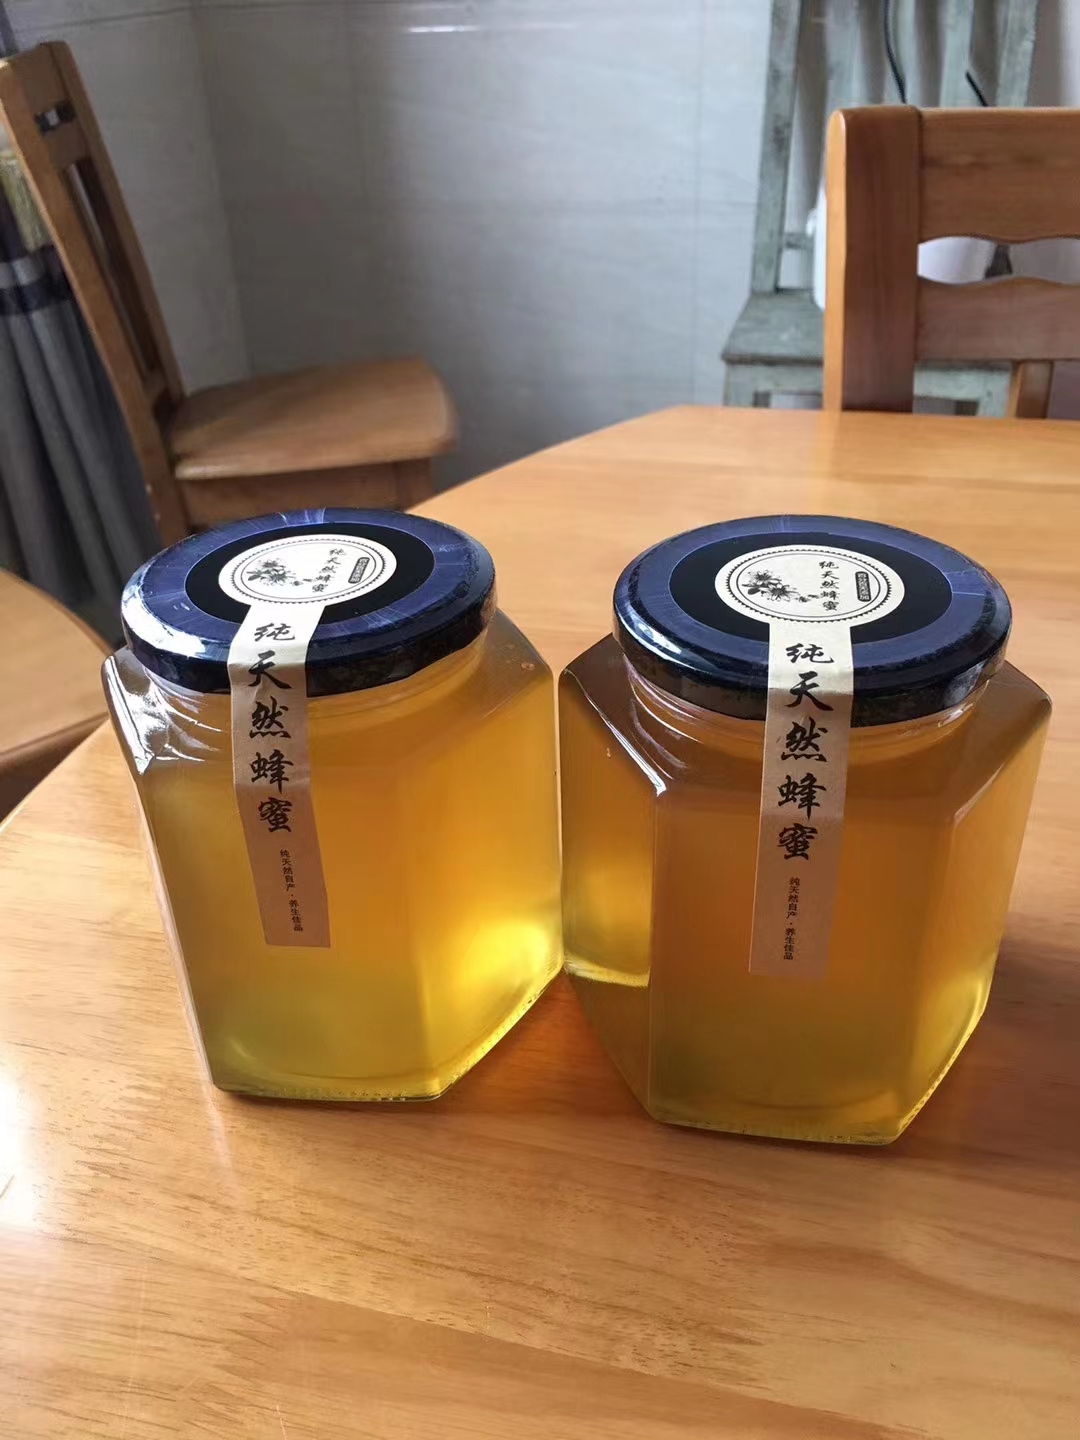 瓶装蜂蜜价格-瓶装蜂蜜批发-瓶装蜂蜜销售-哪里有卖瓶装蜂蜜